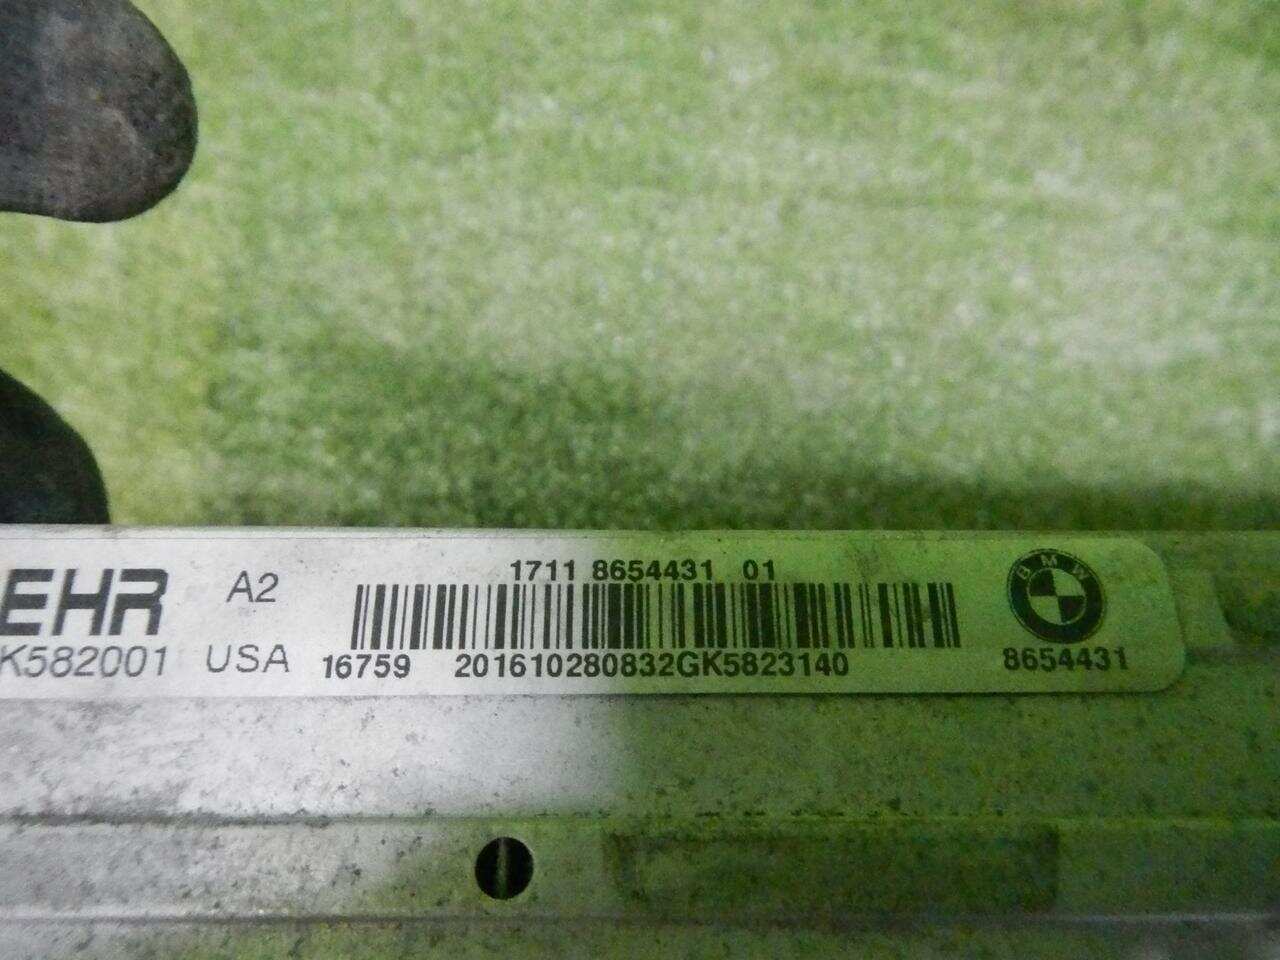 Радиатор охлаждения BMW X5 F15 (2013-2018) 17118654431 0000004851158